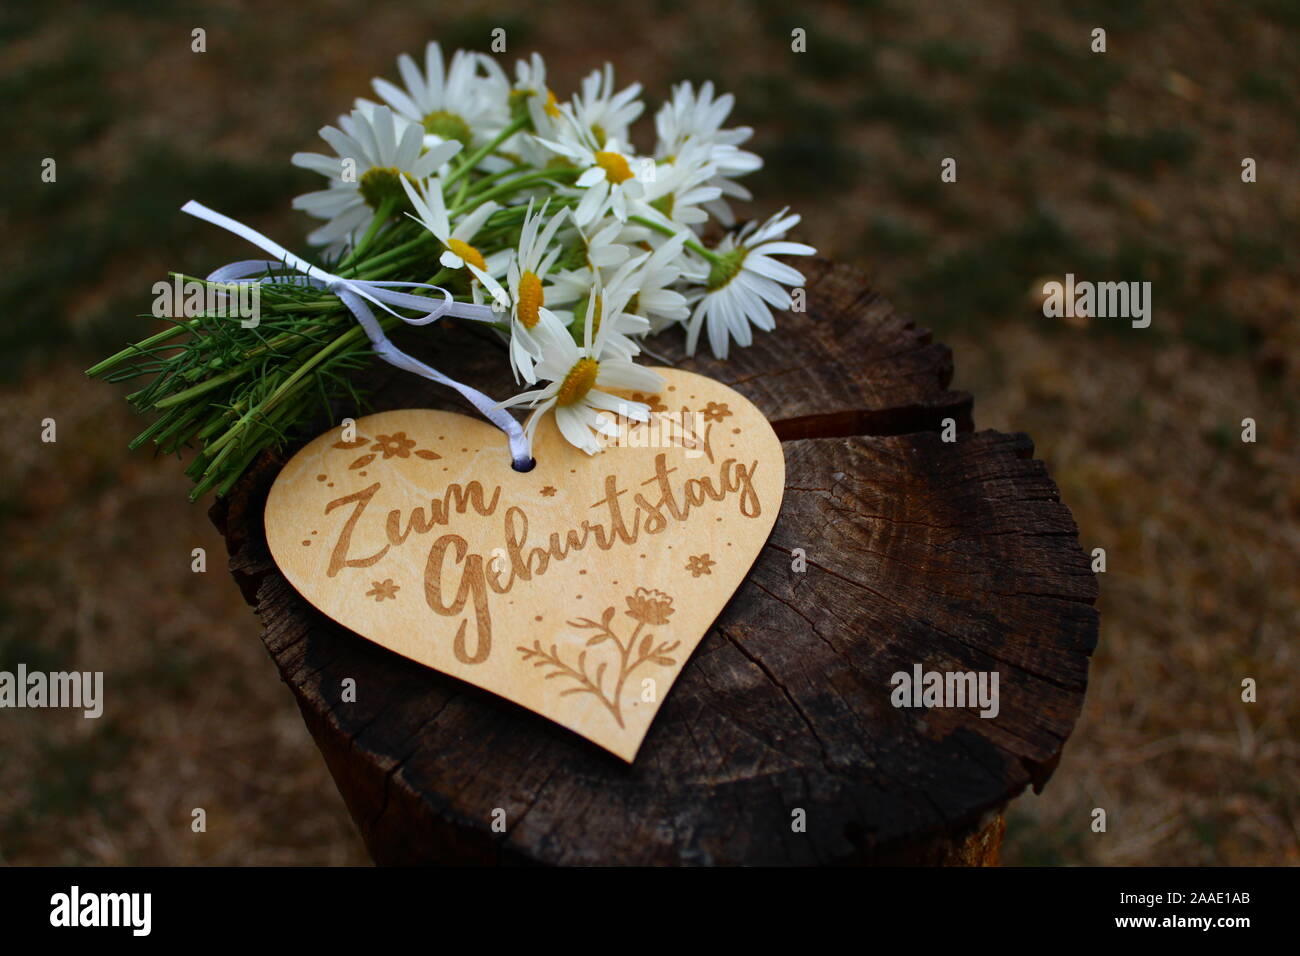 Das Bild zeigt die Happy birthday Grüße auf ein Herz mit Blumen  Stockfotografie - Alamy